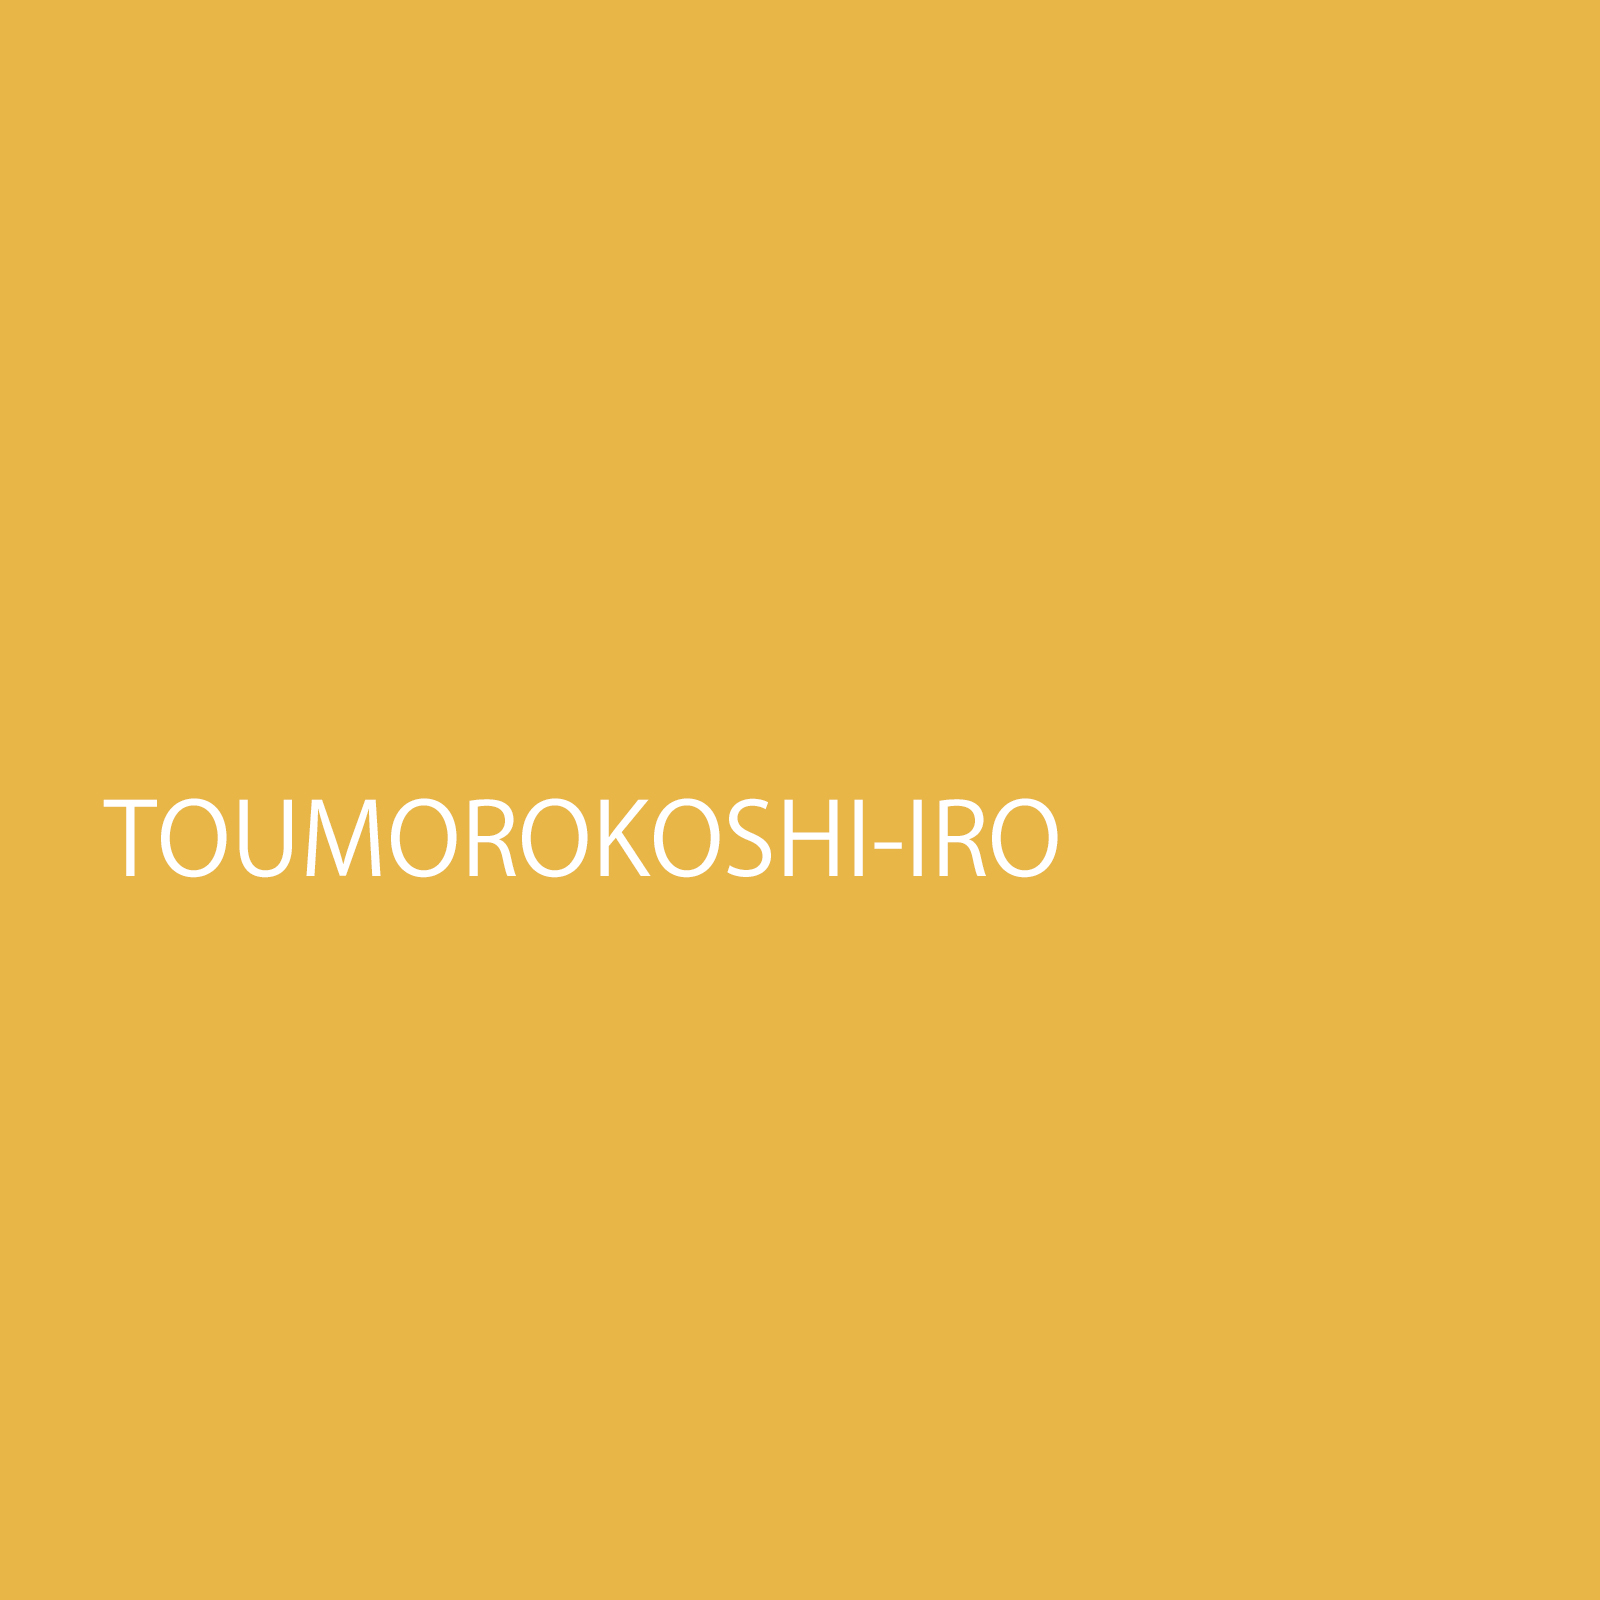 toumorokoshiiro.jpg